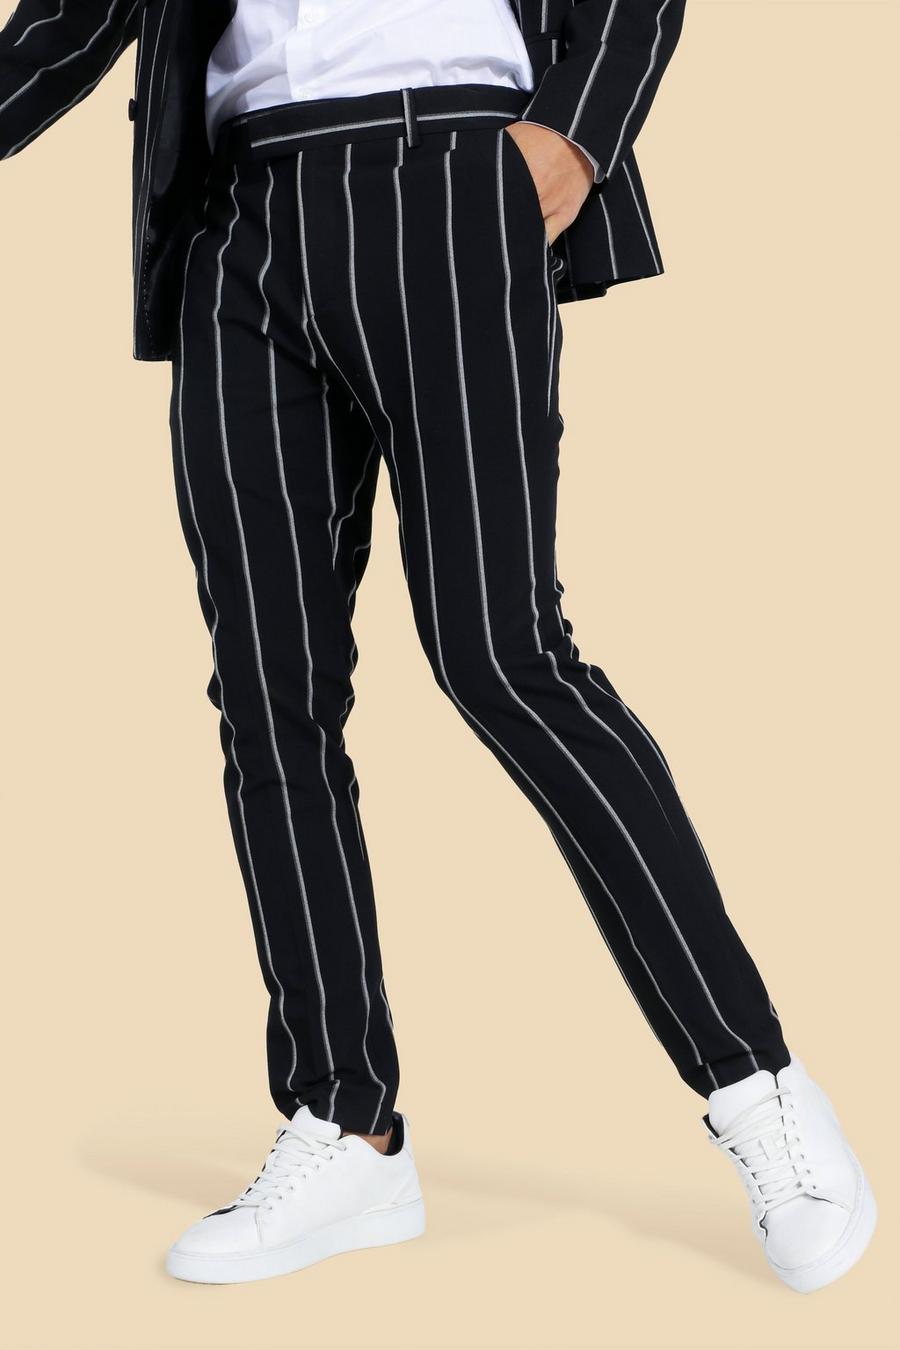 שחור black מכנסי חליפה בגזרת סקיני עם פסים דקים